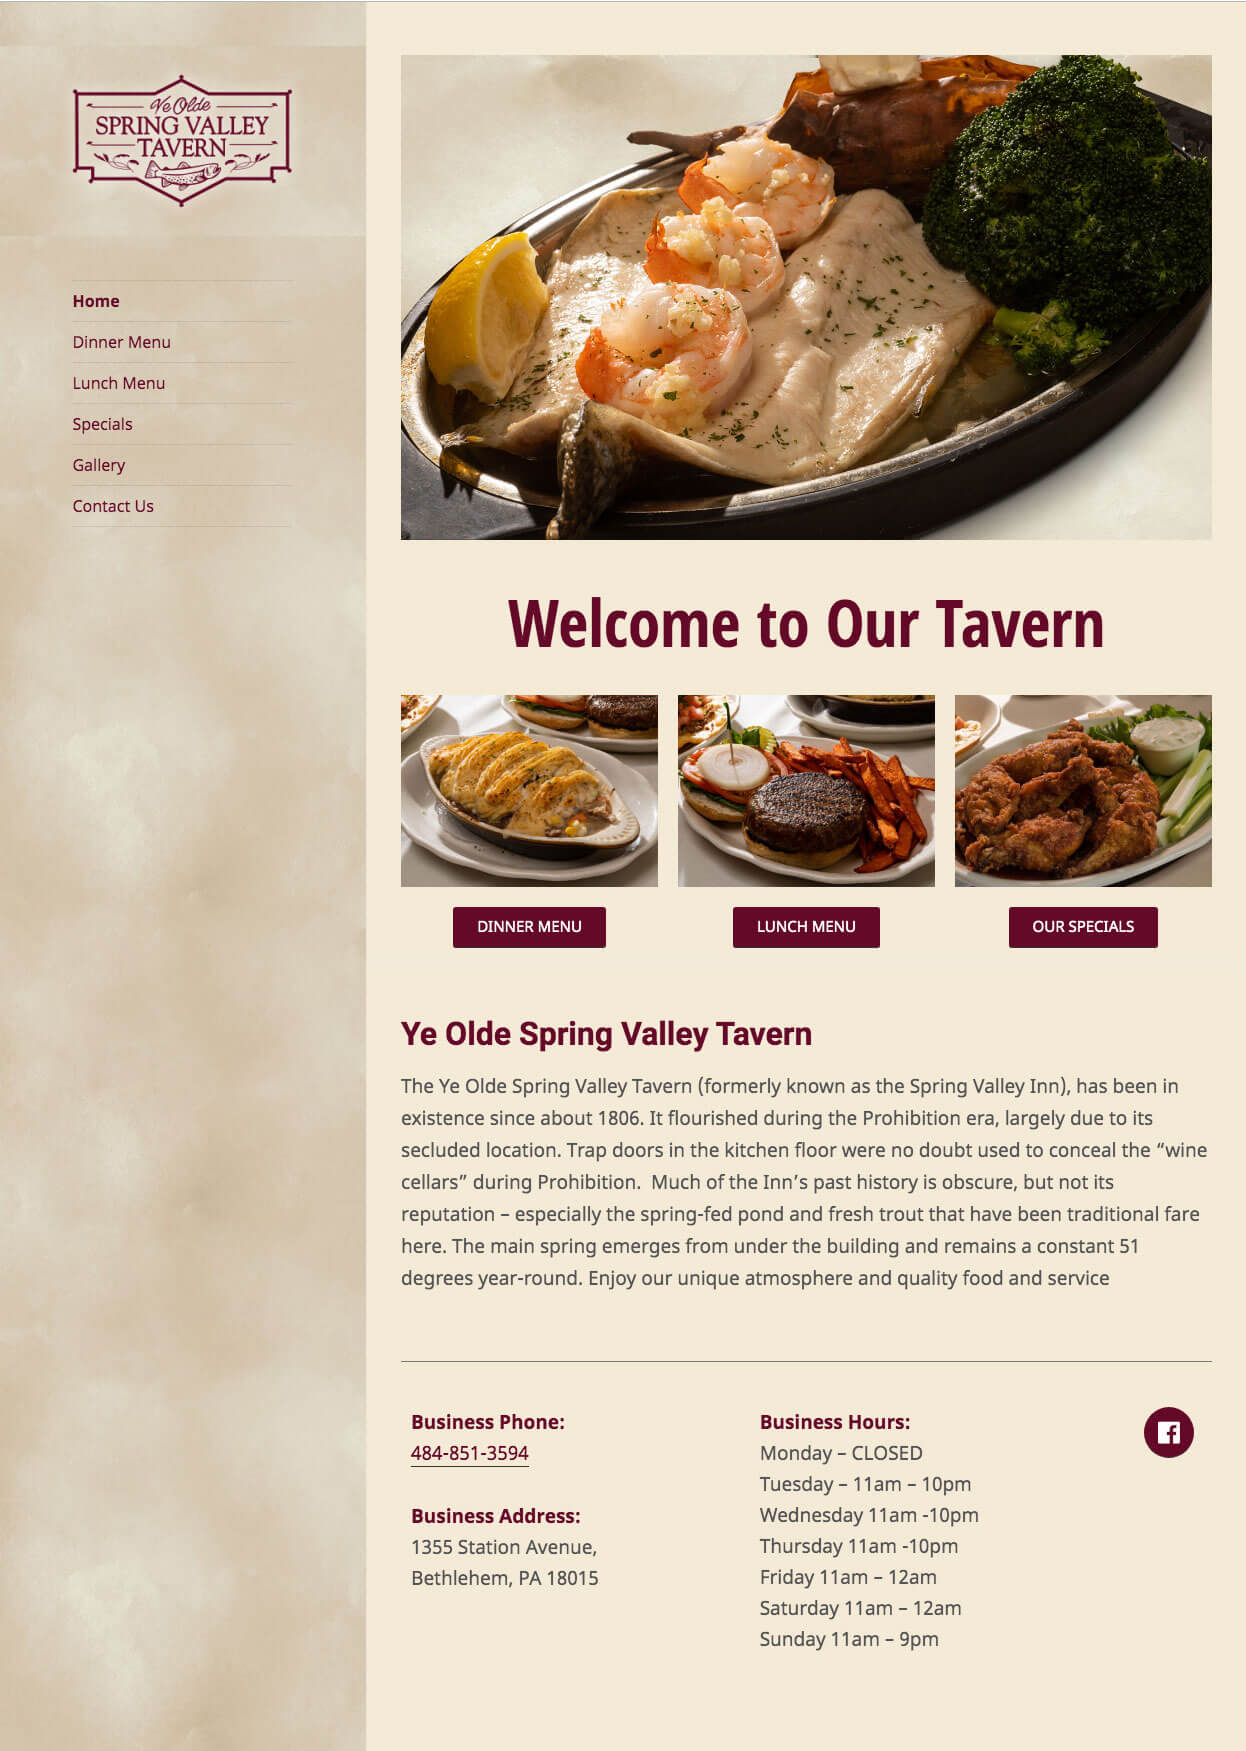 Ye Olde Spring Valley Tavern - TLS Mobile Friendly Website